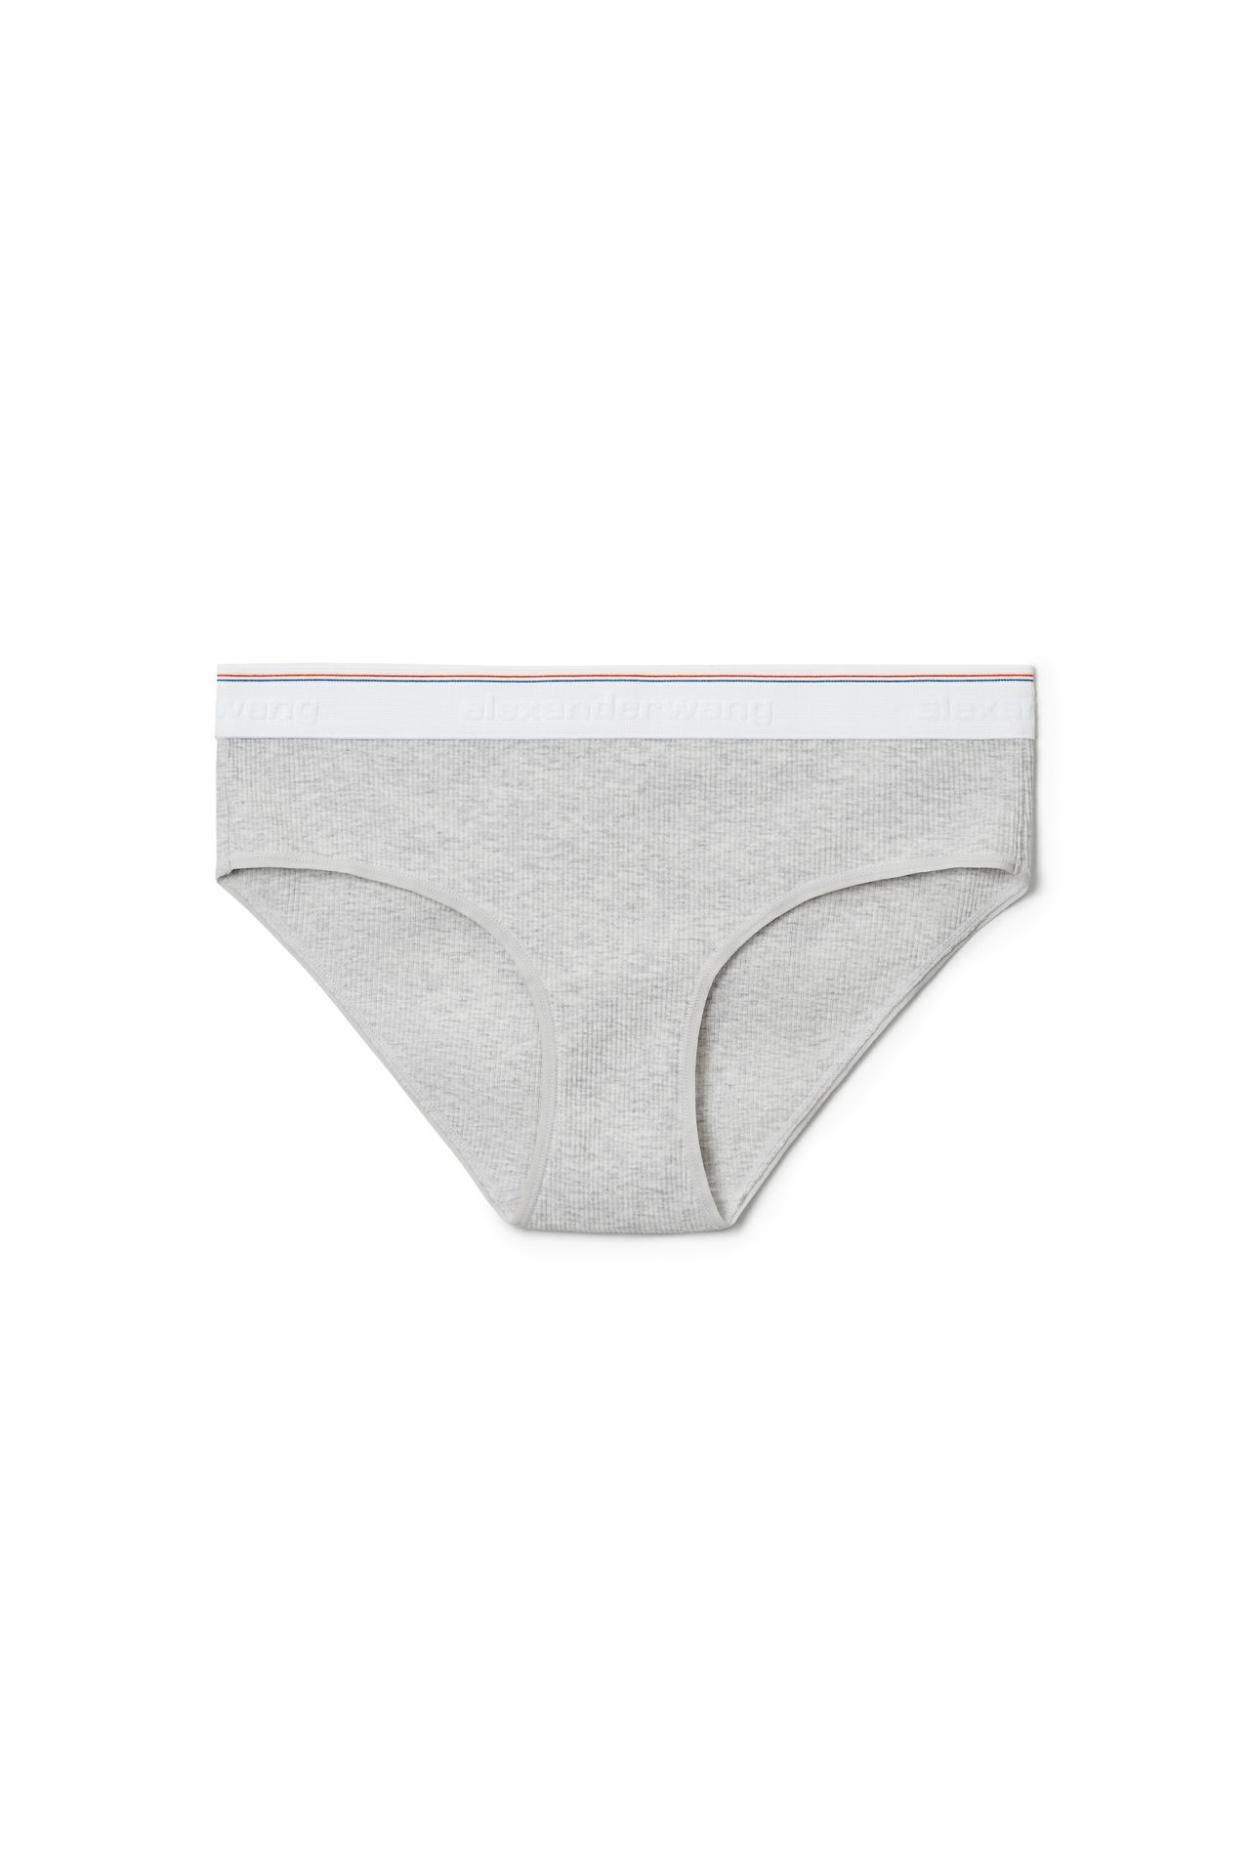 Bodywear | Alexander Wang Womens Brief Underwear In Ribbed Jersey